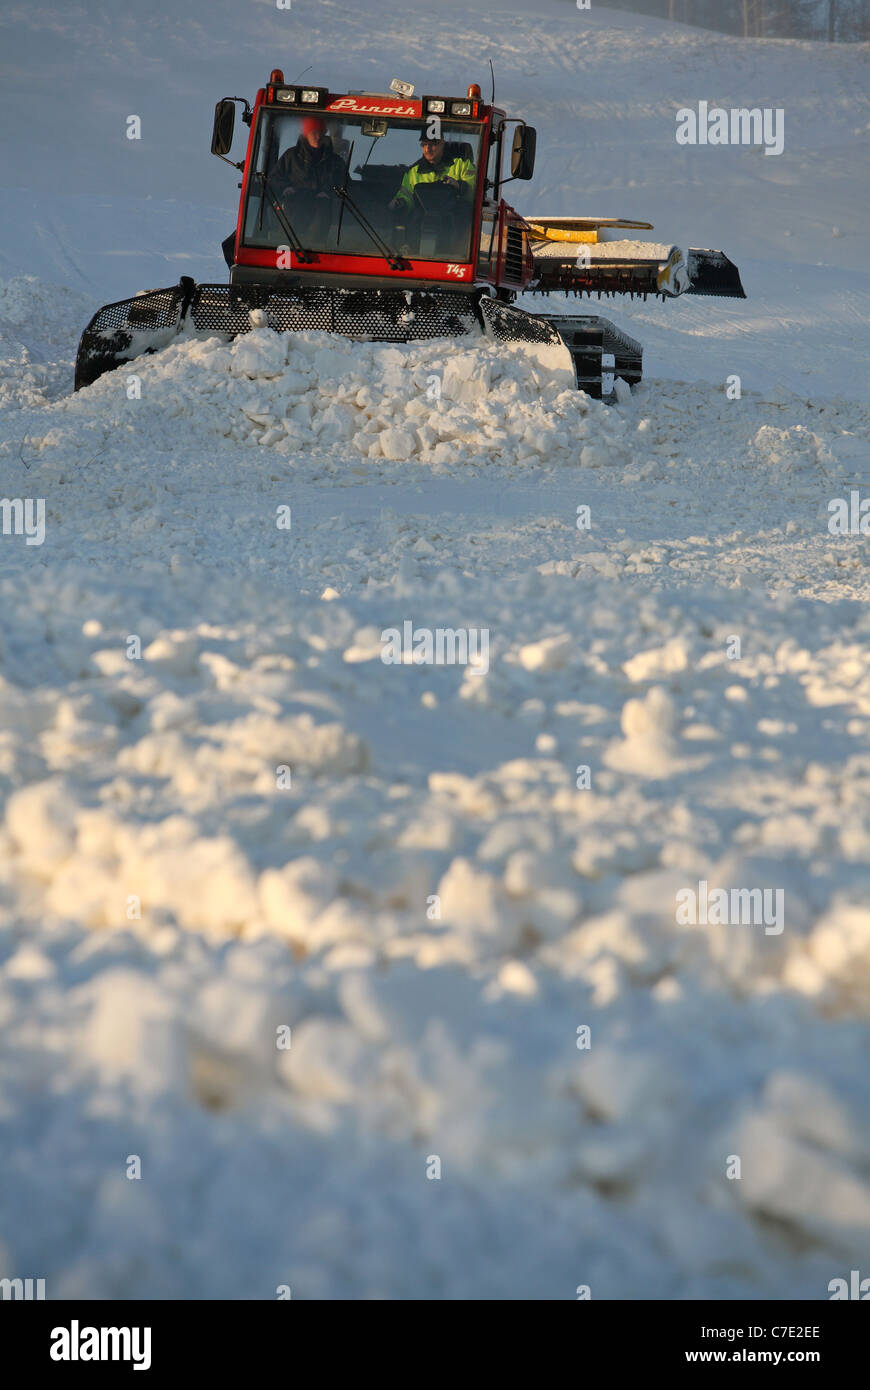 Snow crawler preparing a ski slope, Ingatorp, Sweden Stock Photo